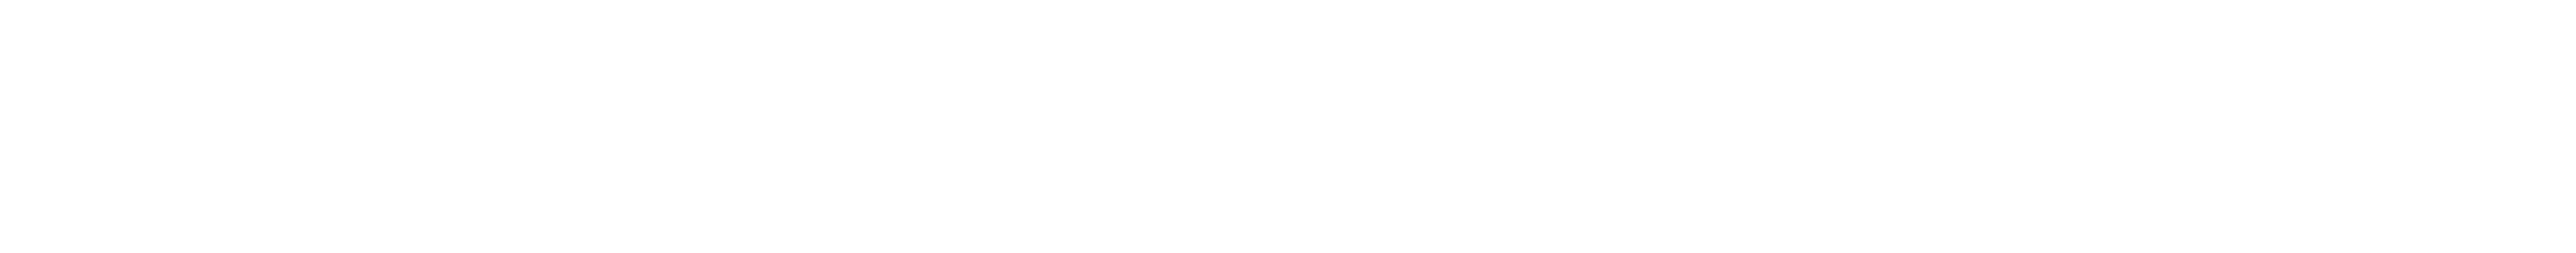 oneWorkspace